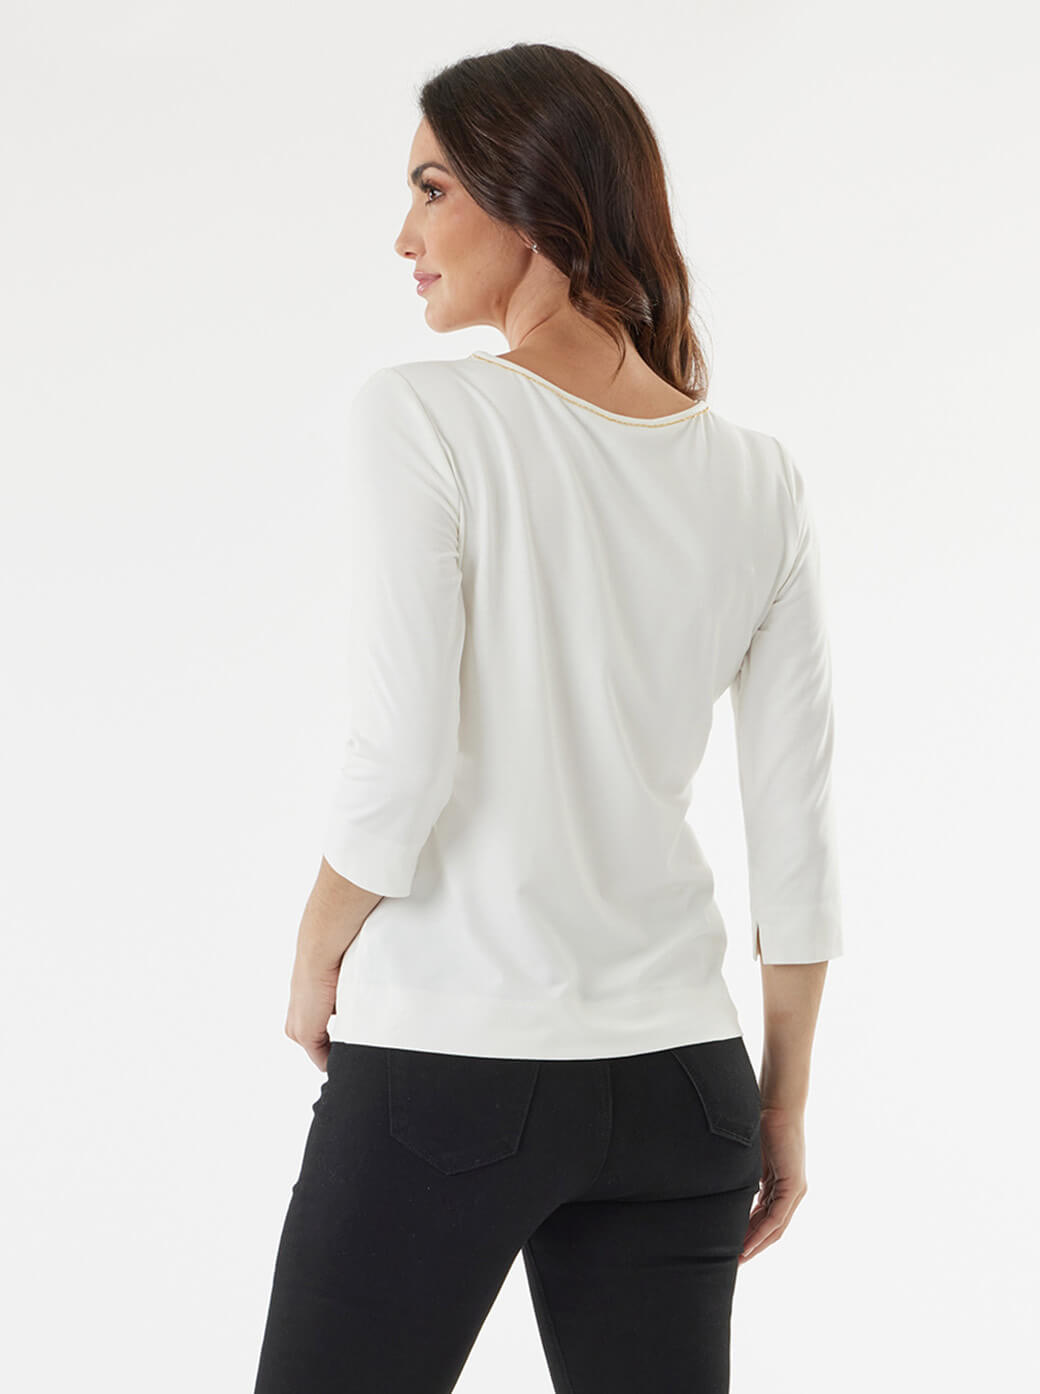 Blusa blanca con escote redondo Esenciales